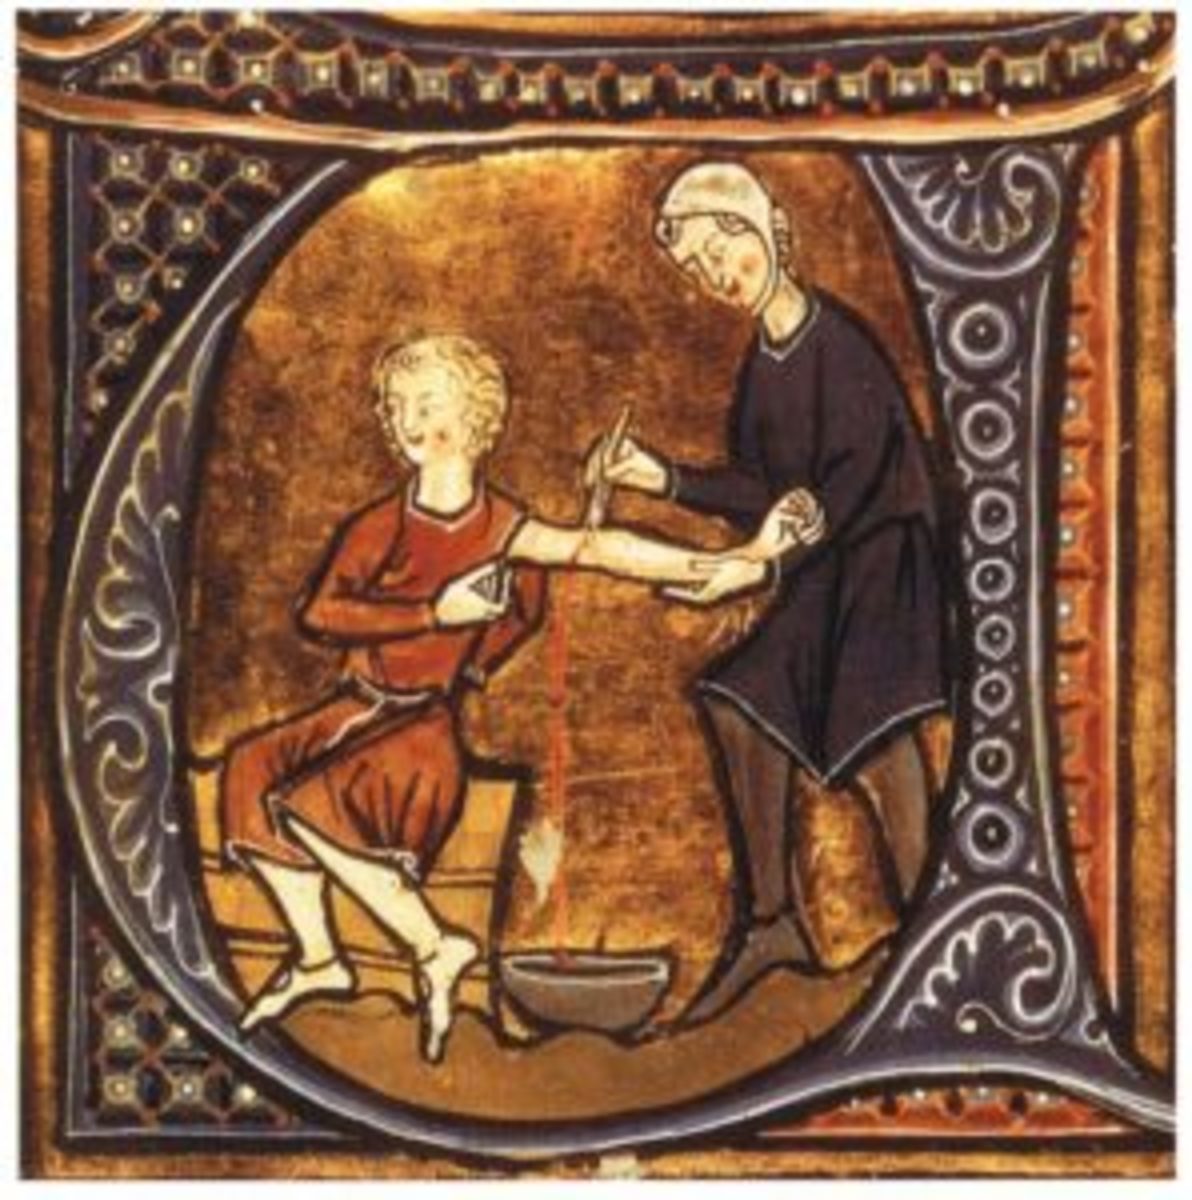 Depiction of old medicine